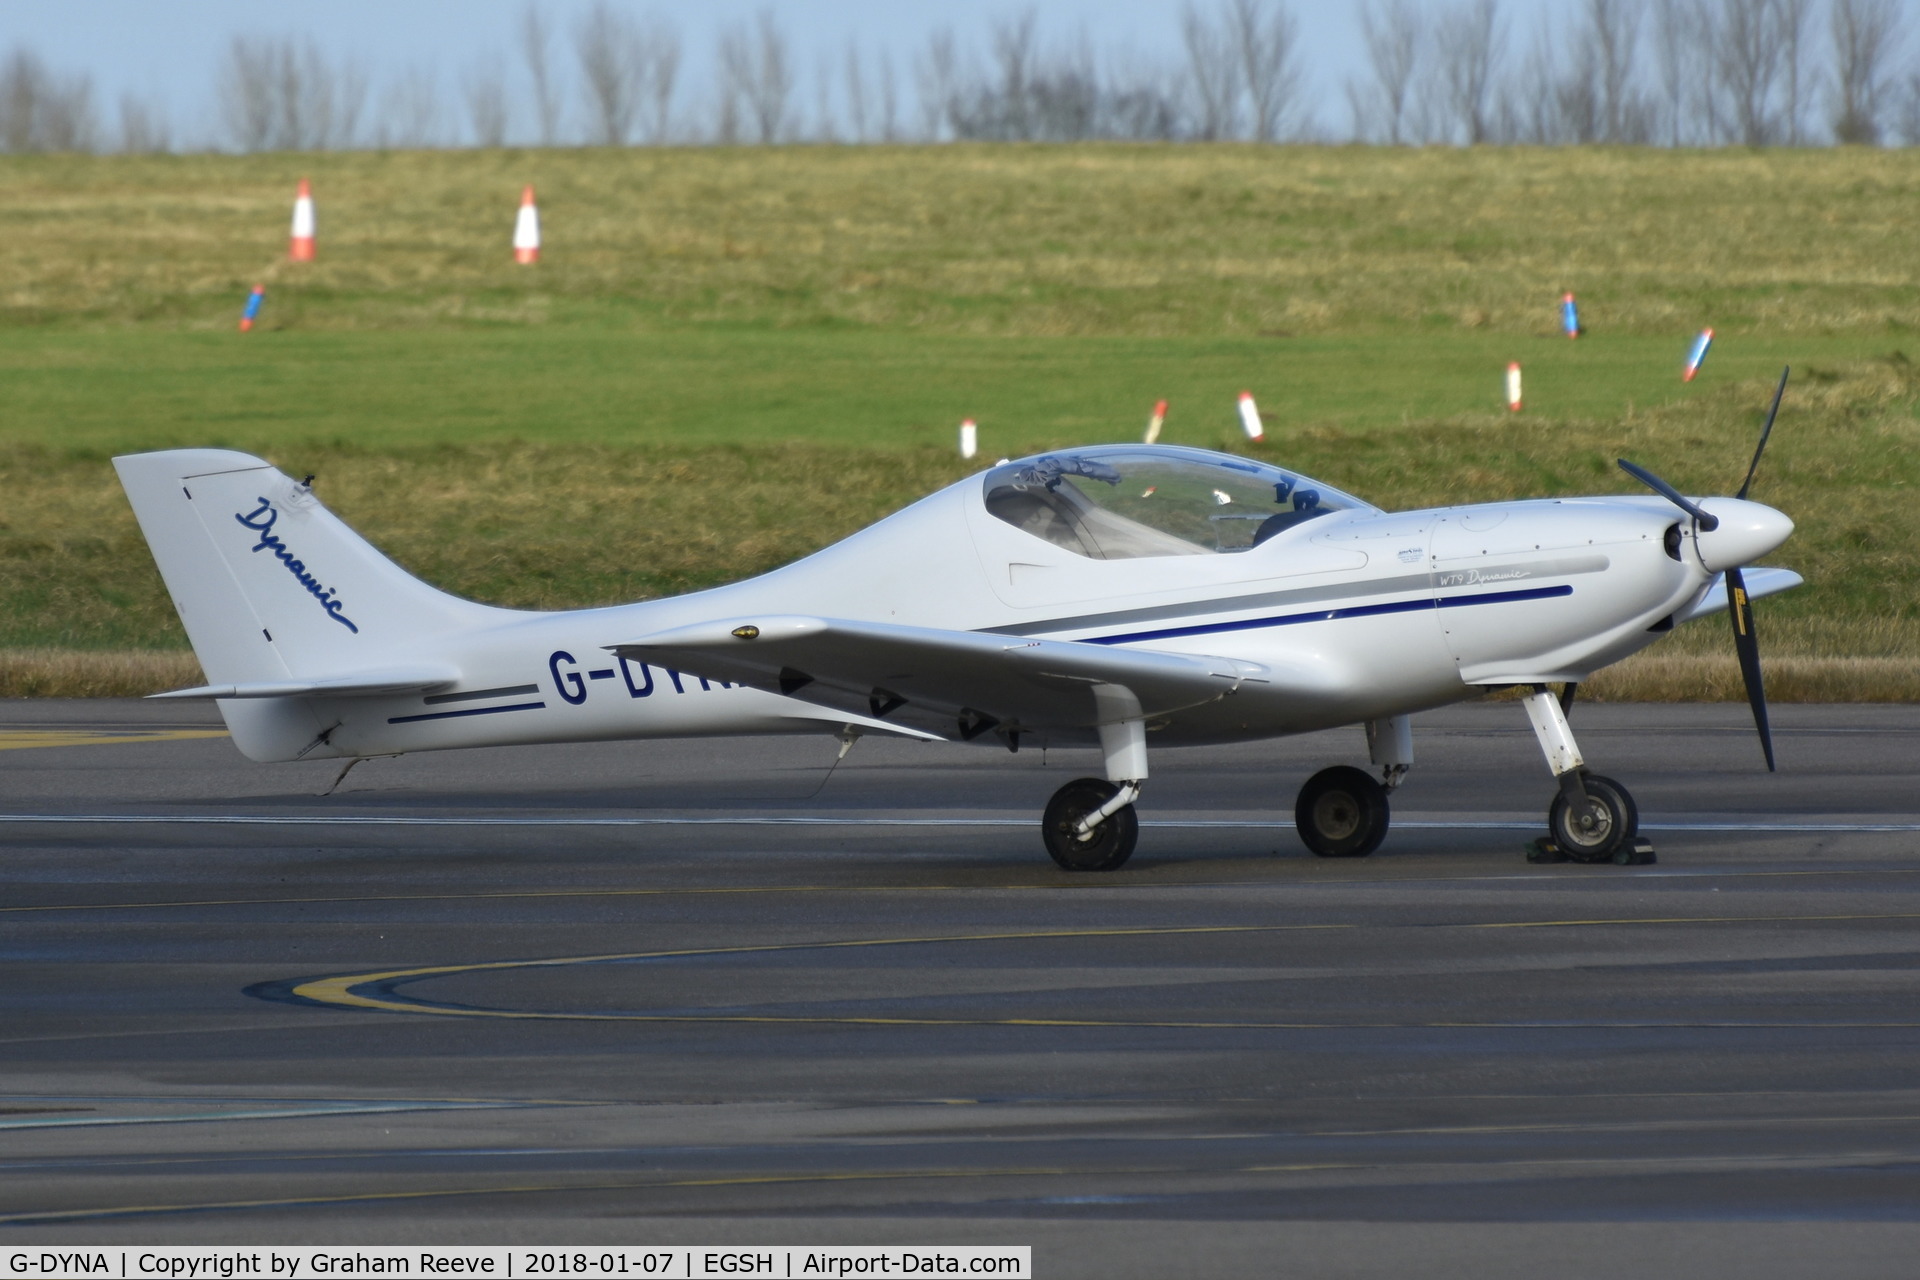 G-DYNA, 2006 Aerospool WT-9 Dynamic C/N DY135/2006, Parked at Norwich.